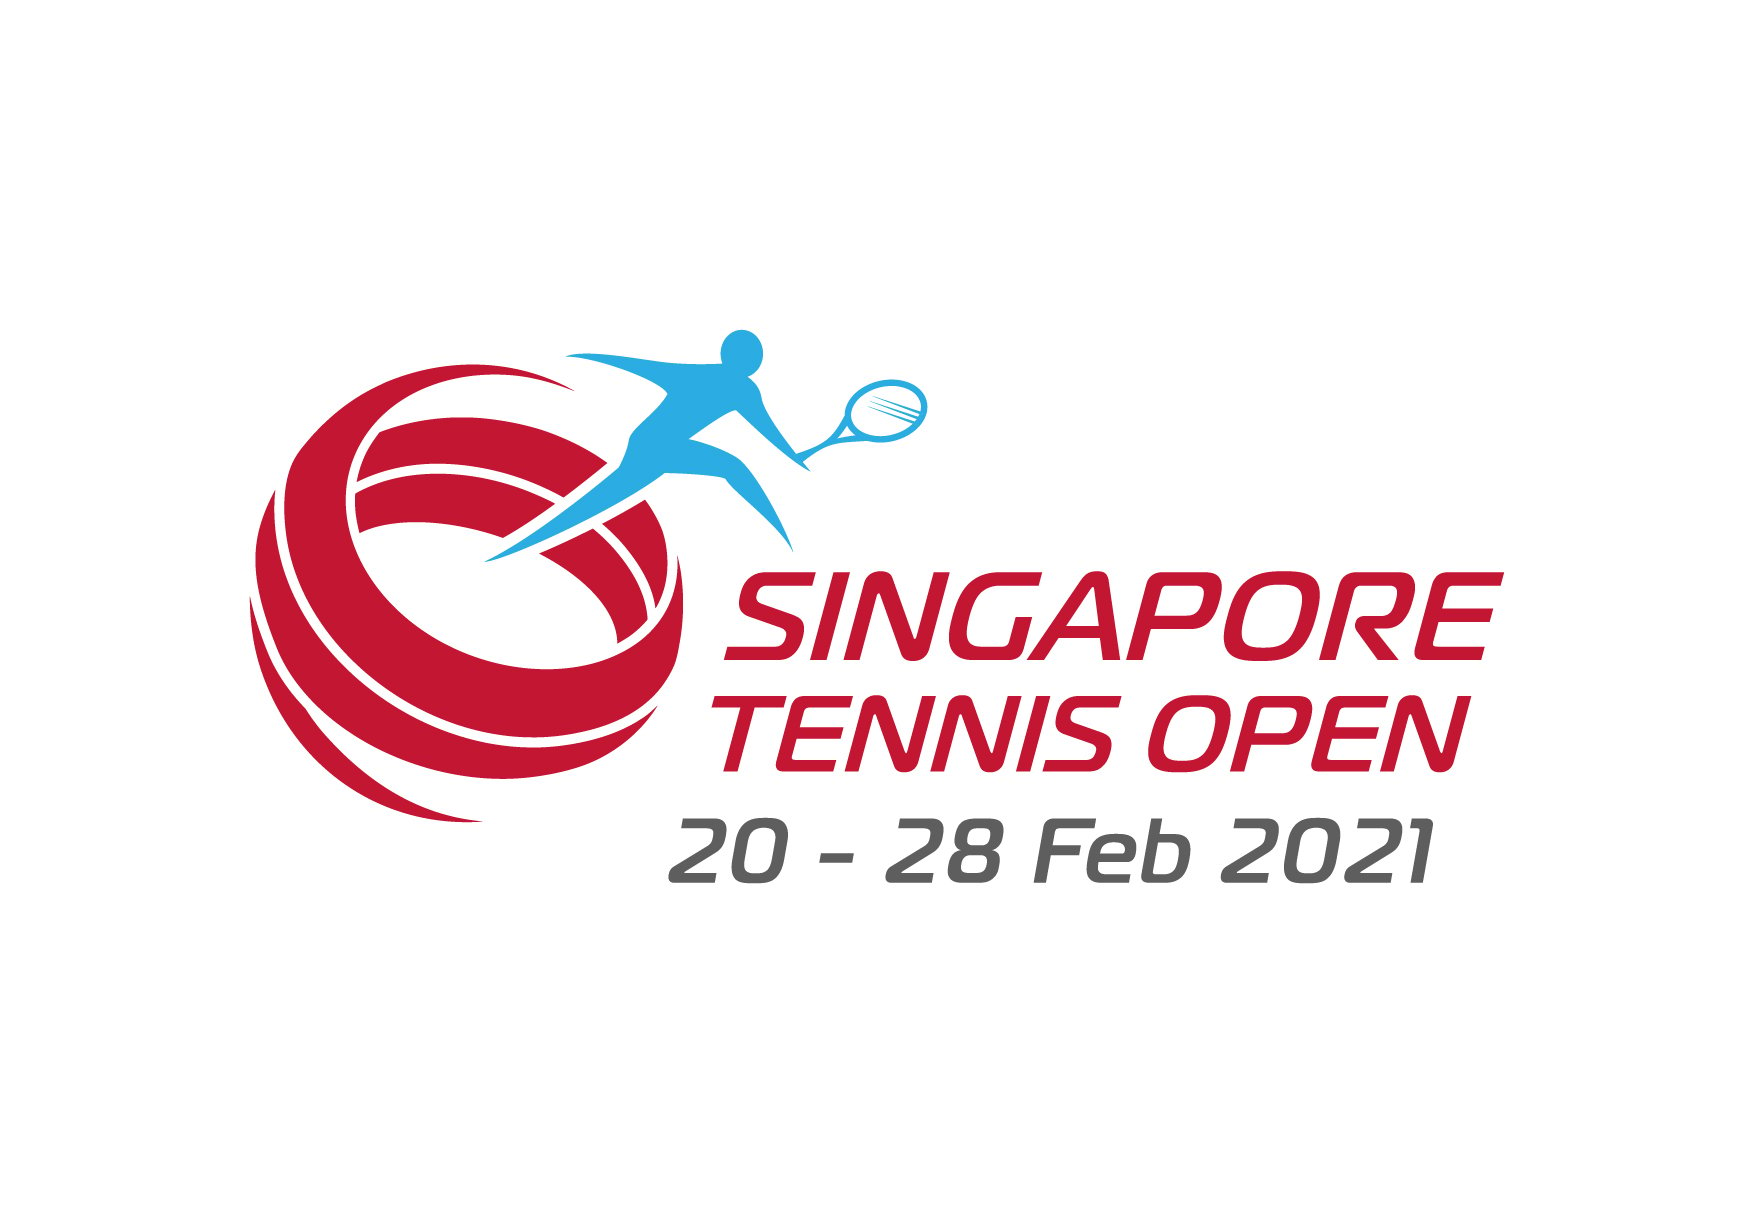 Singapore Tennis Open 2021 Logo